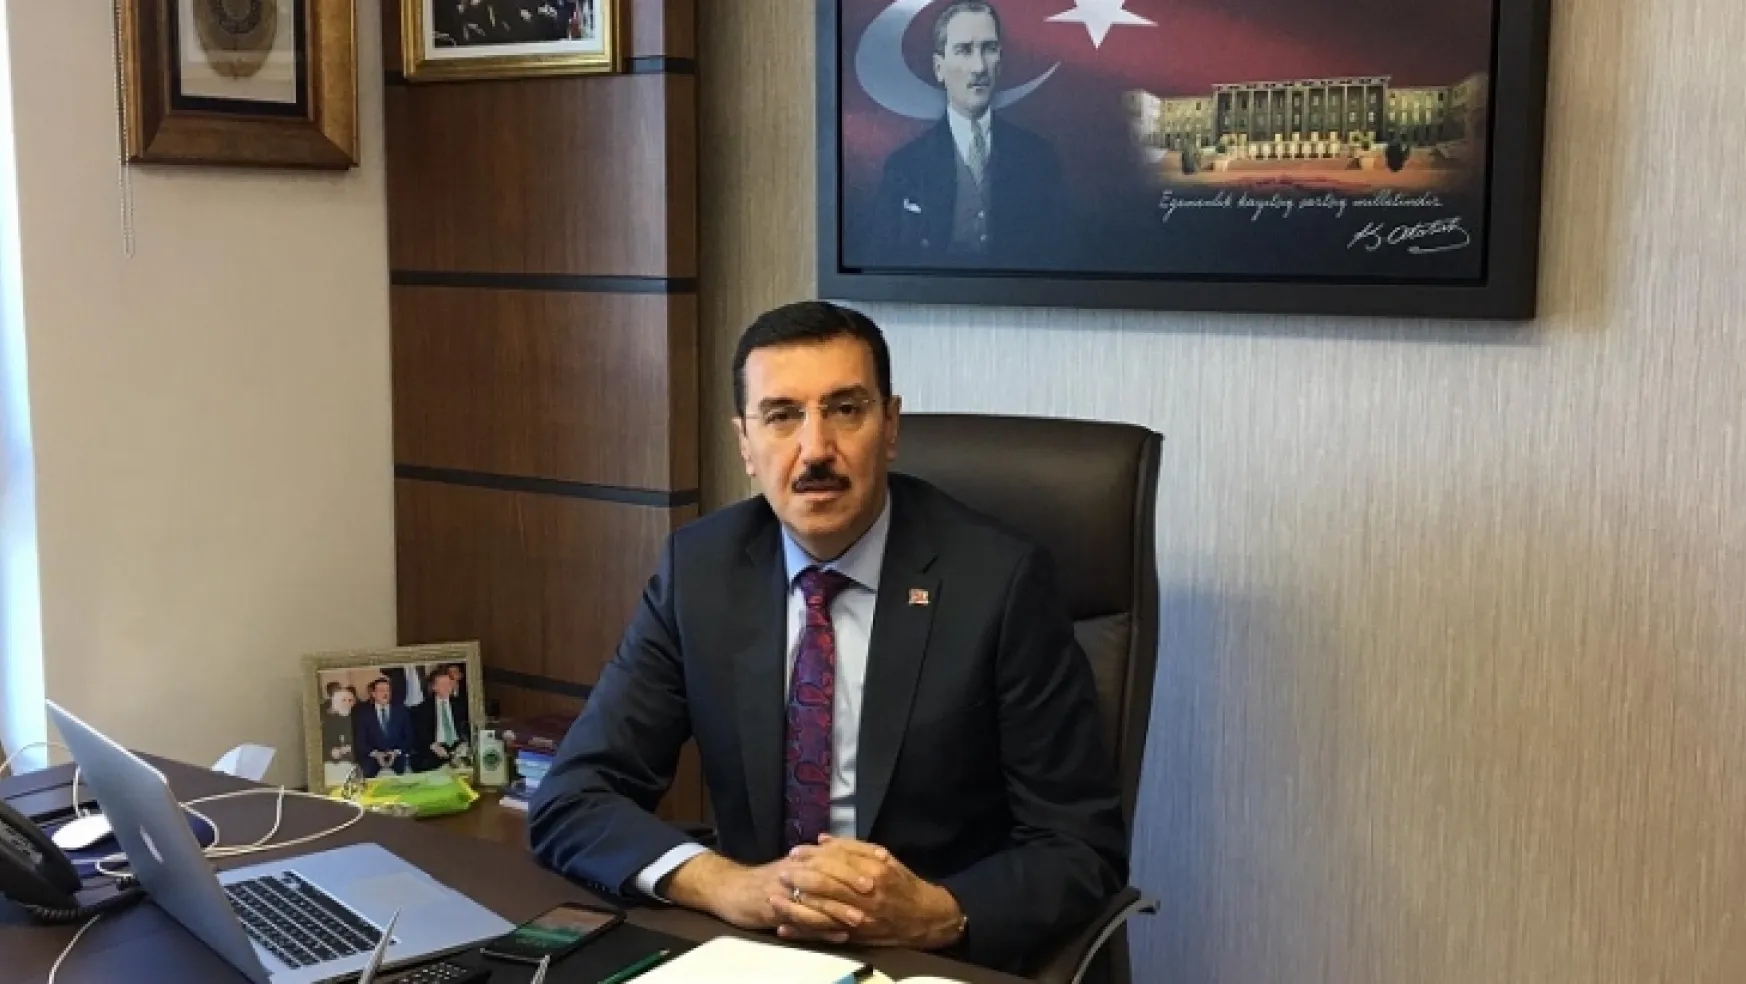 Milletvekili Bülent Tüfenkci'nin 30 Ağustos Zafer Bayramı Mesajı